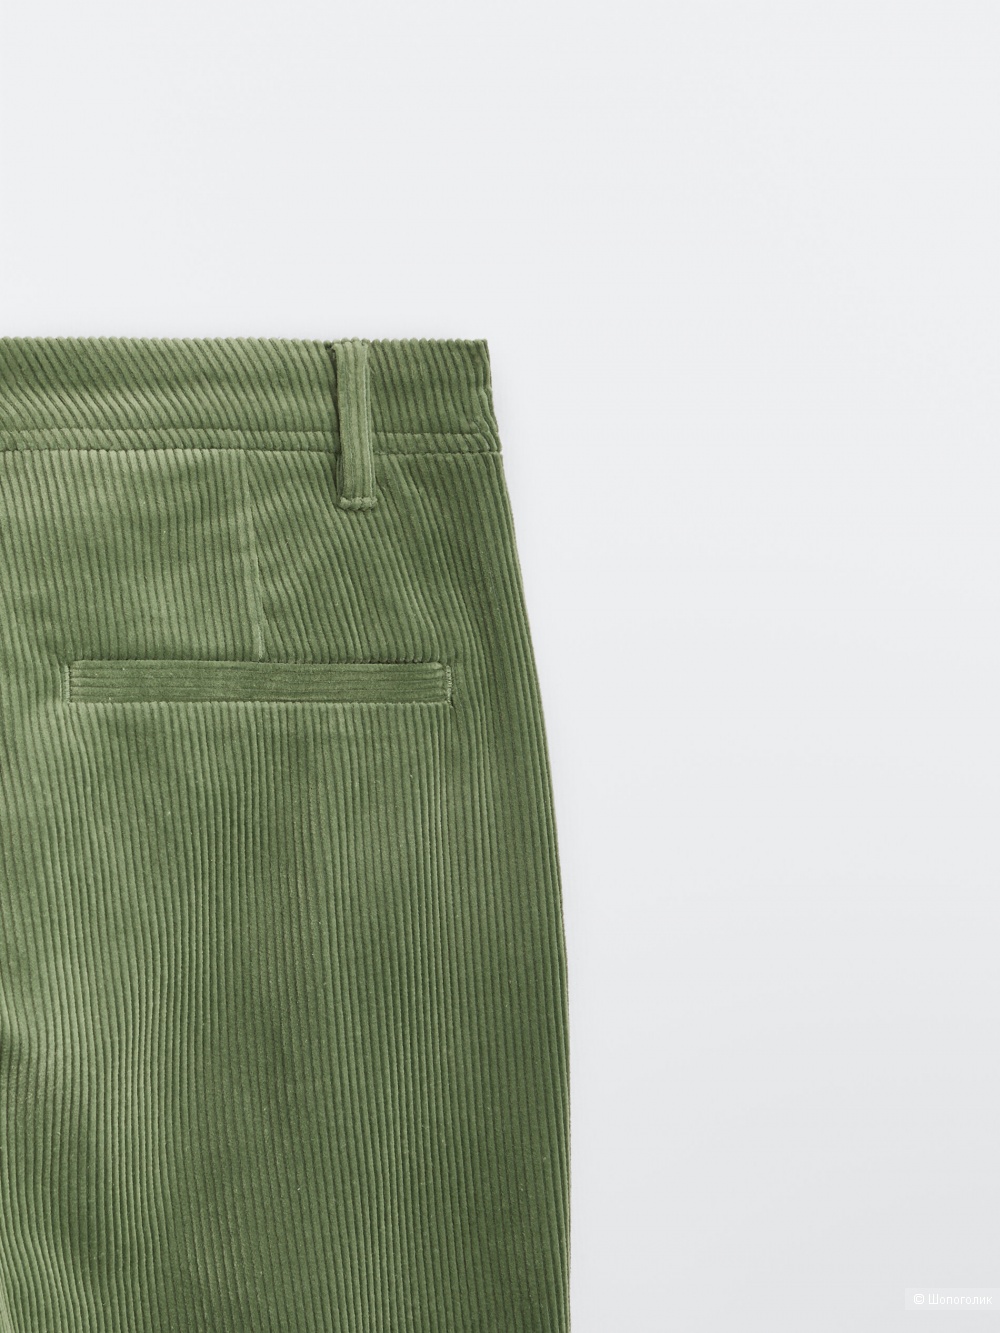 Вельветовые брюки чинос Massimo Dutti в 38 размере